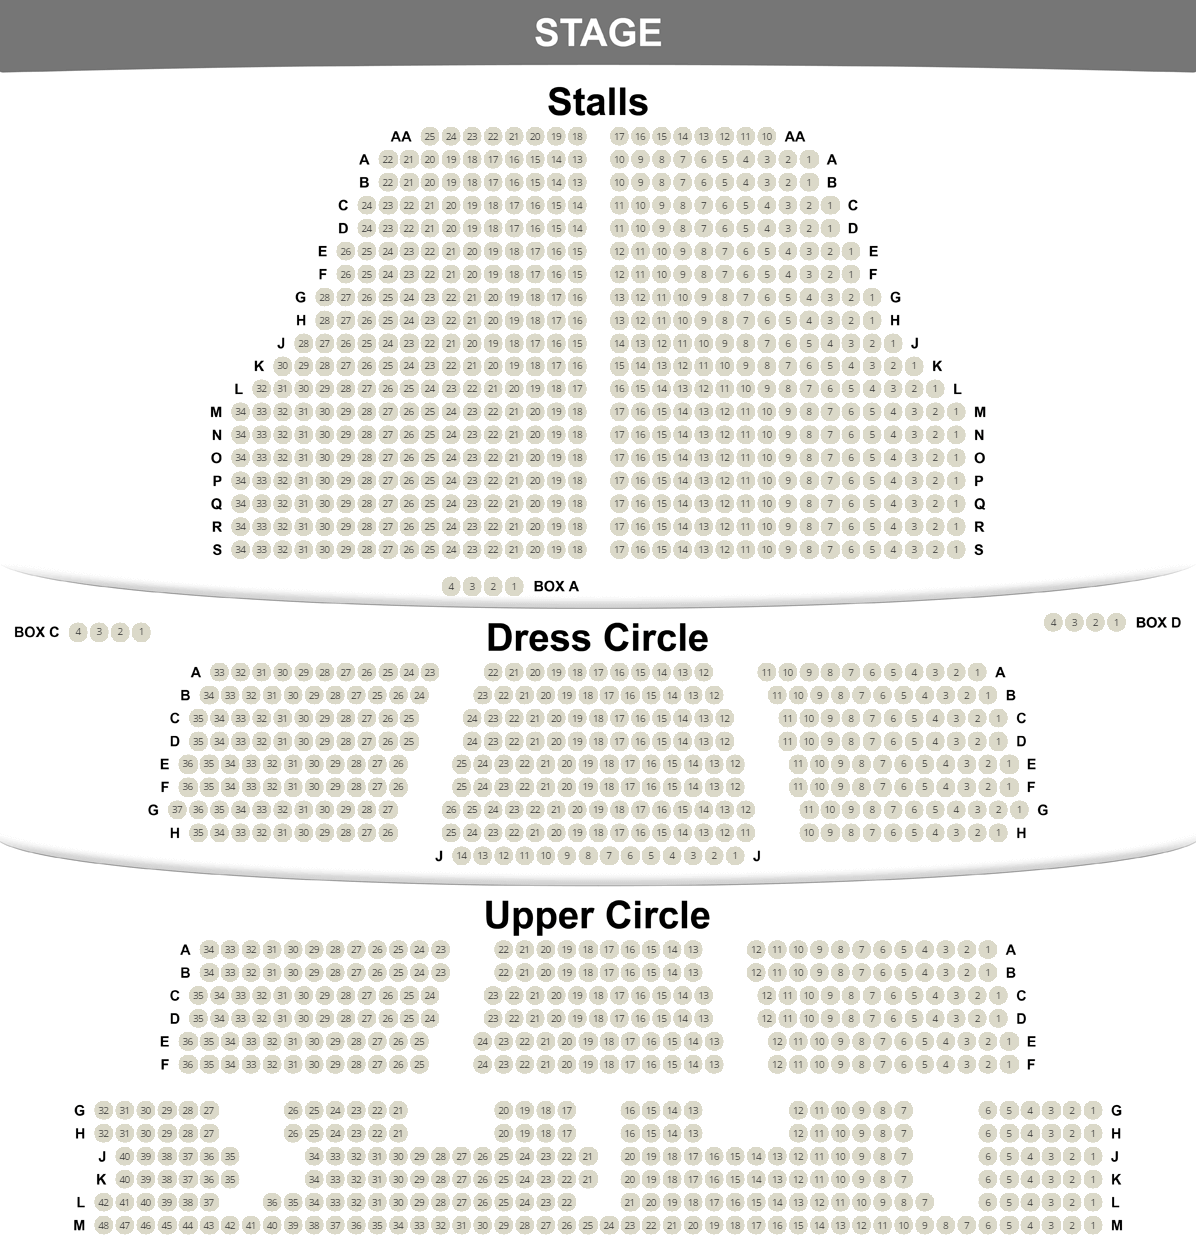 Plan de salle du Cambridge Theatre